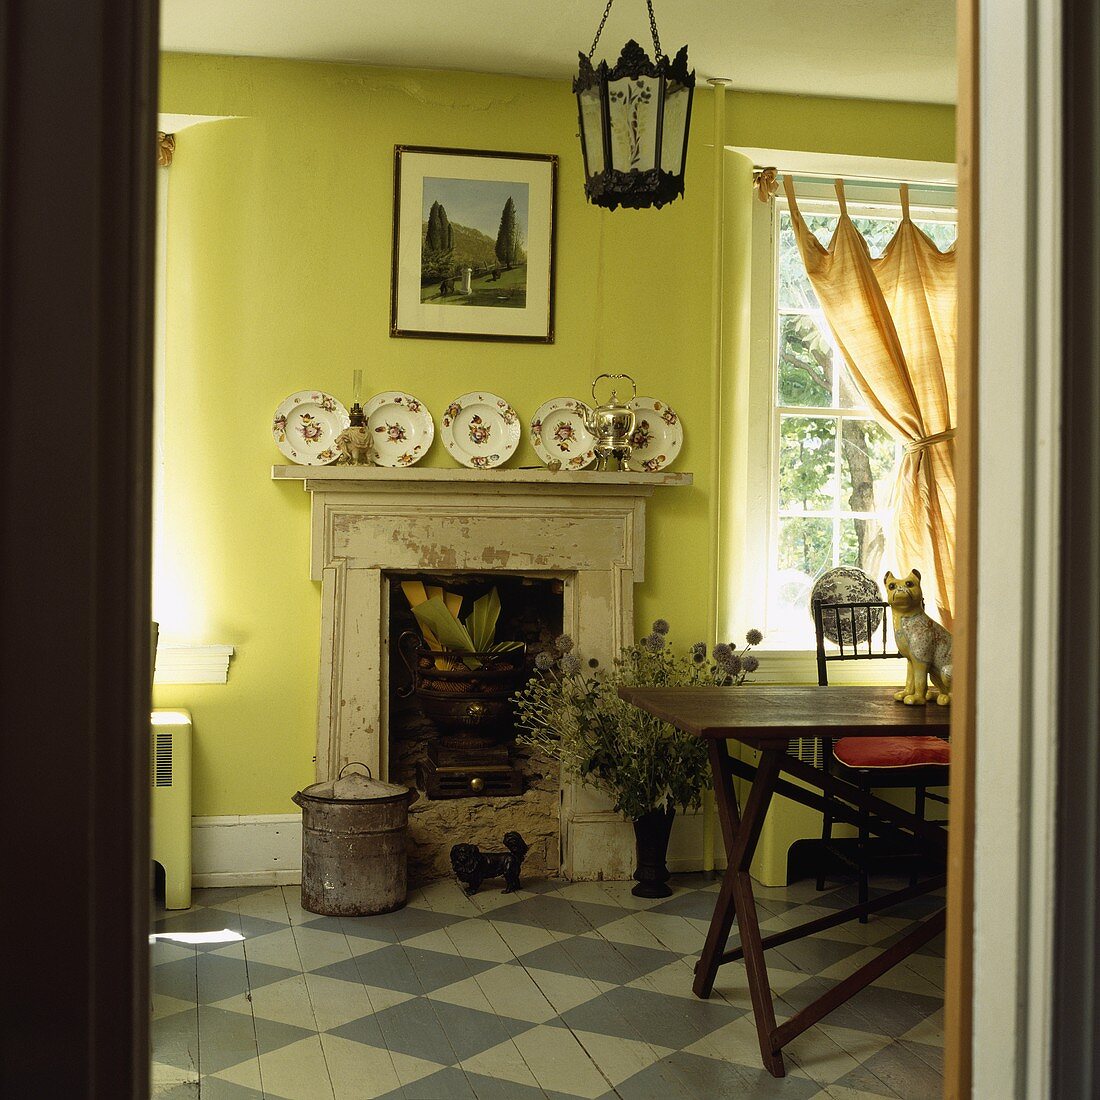 Holzboden mit grau-weißem Schachbrettmuster in einem lindgrünen Esszimmer mit Kamin